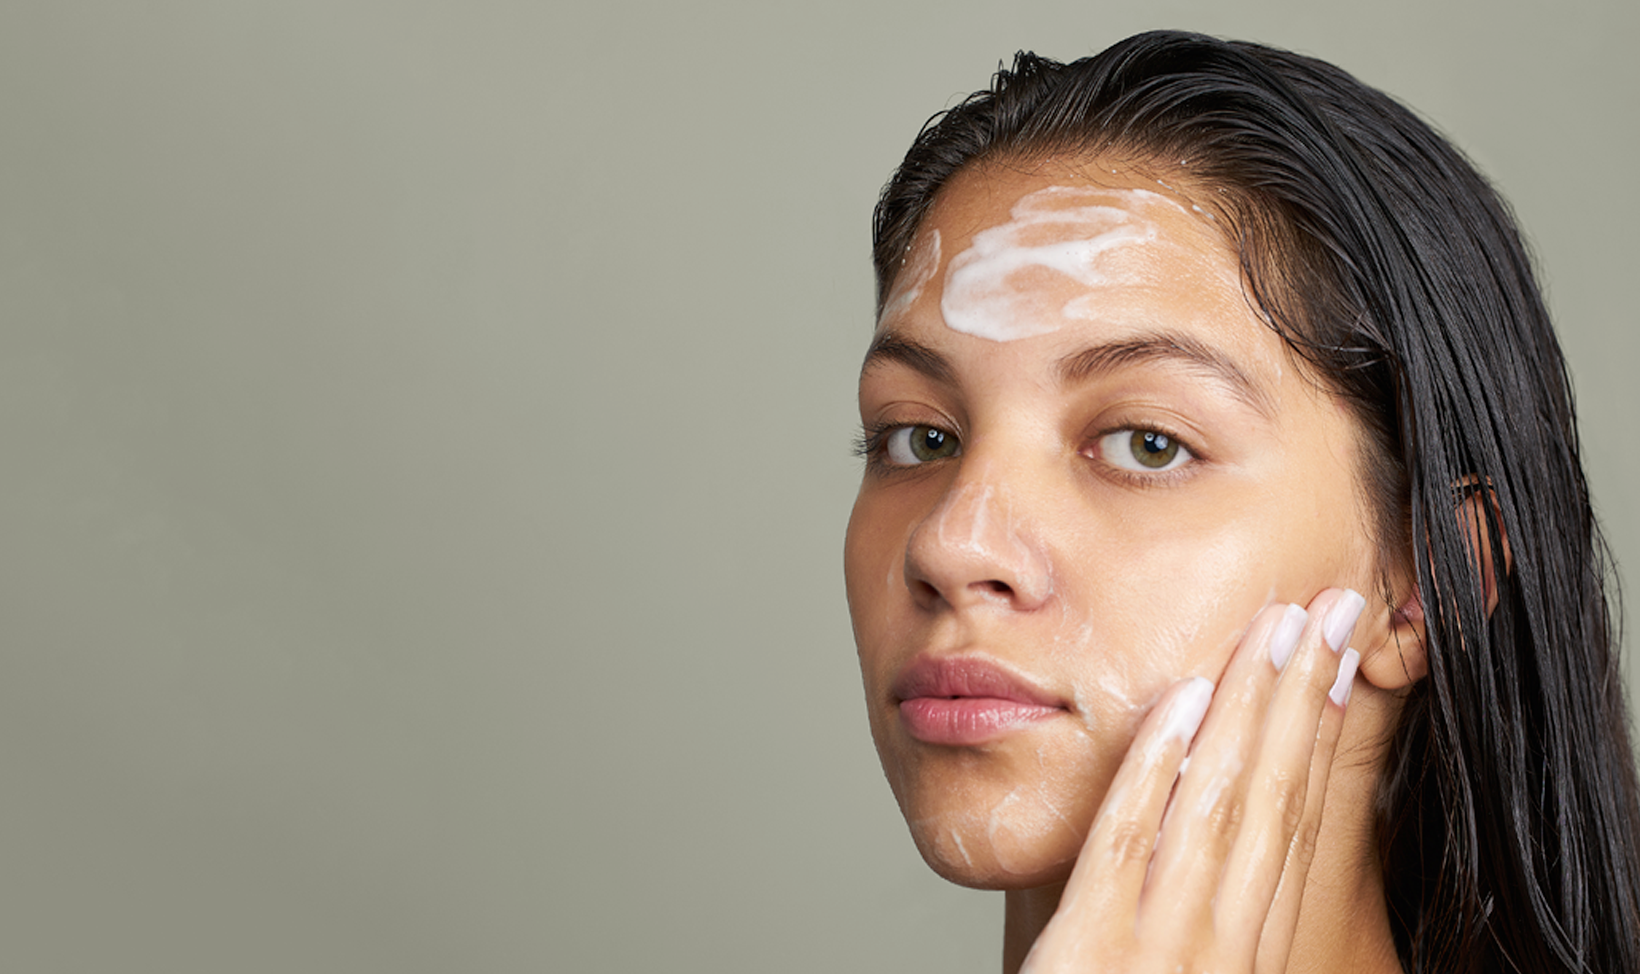 Imagem mostra uma modelo com o rosto ensaboado, limpando sua pele